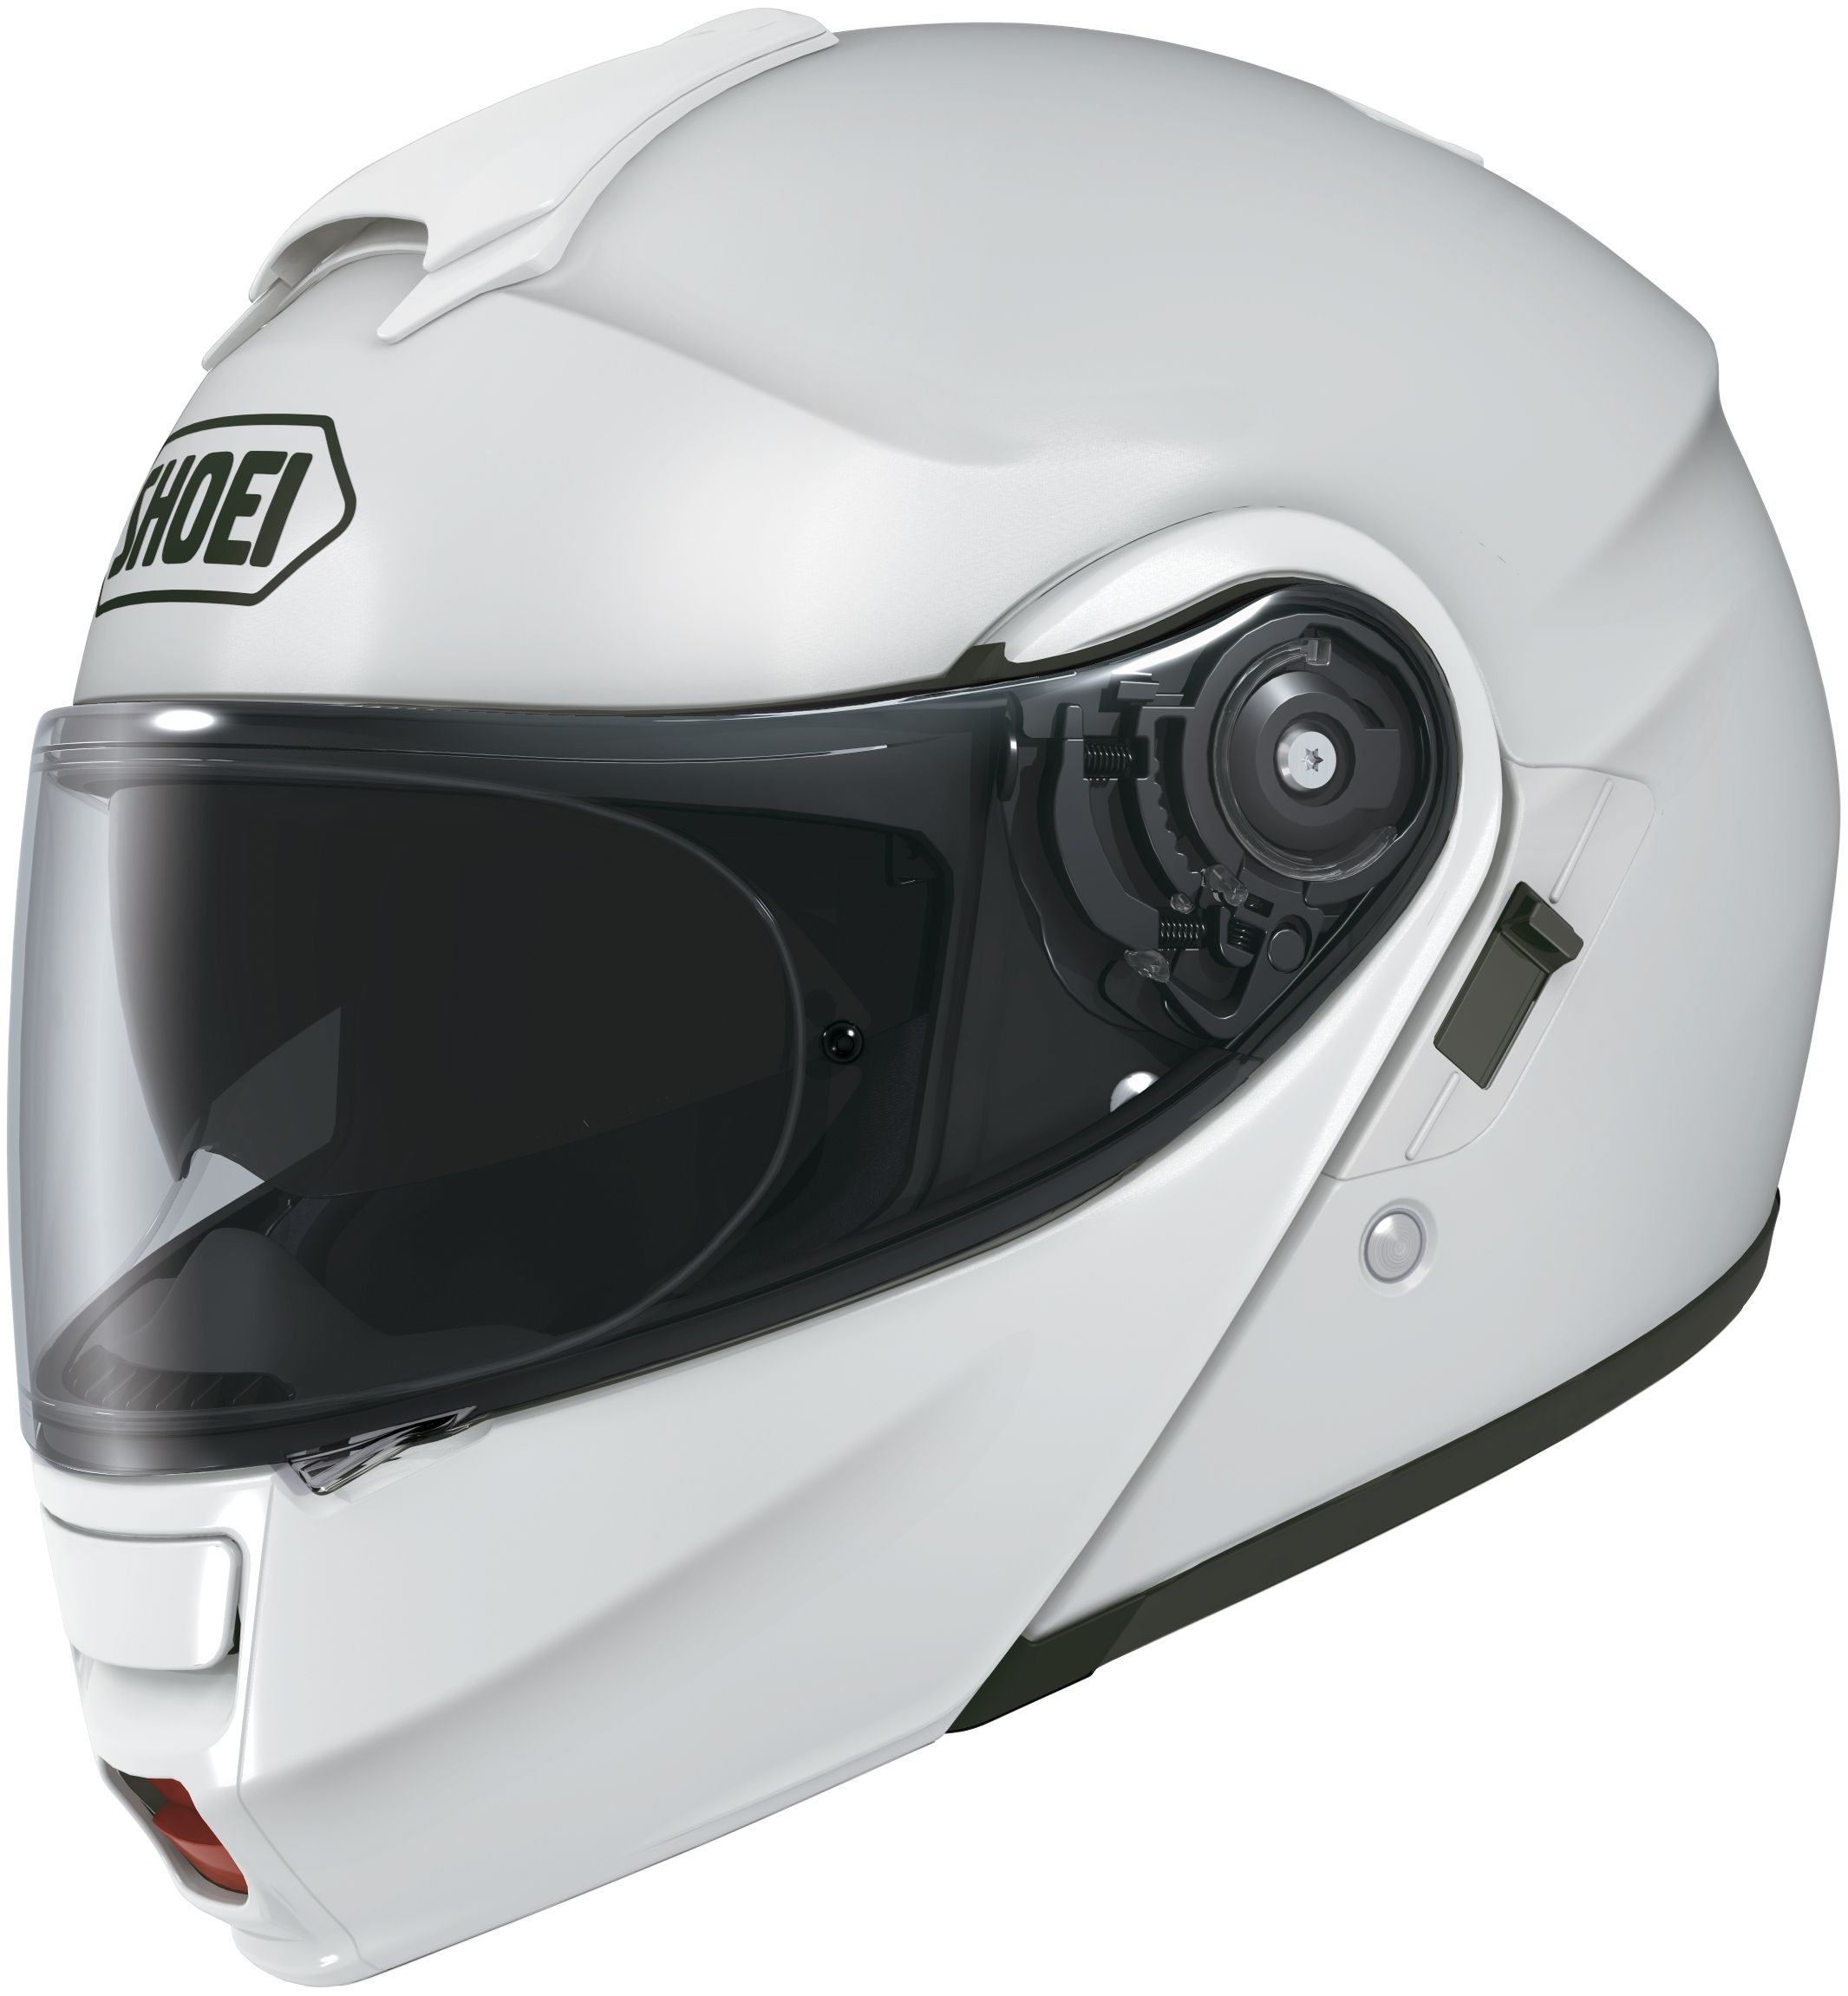 SHOEI NeoTec Motor Helmet Colors Police Motorcycle Equipment